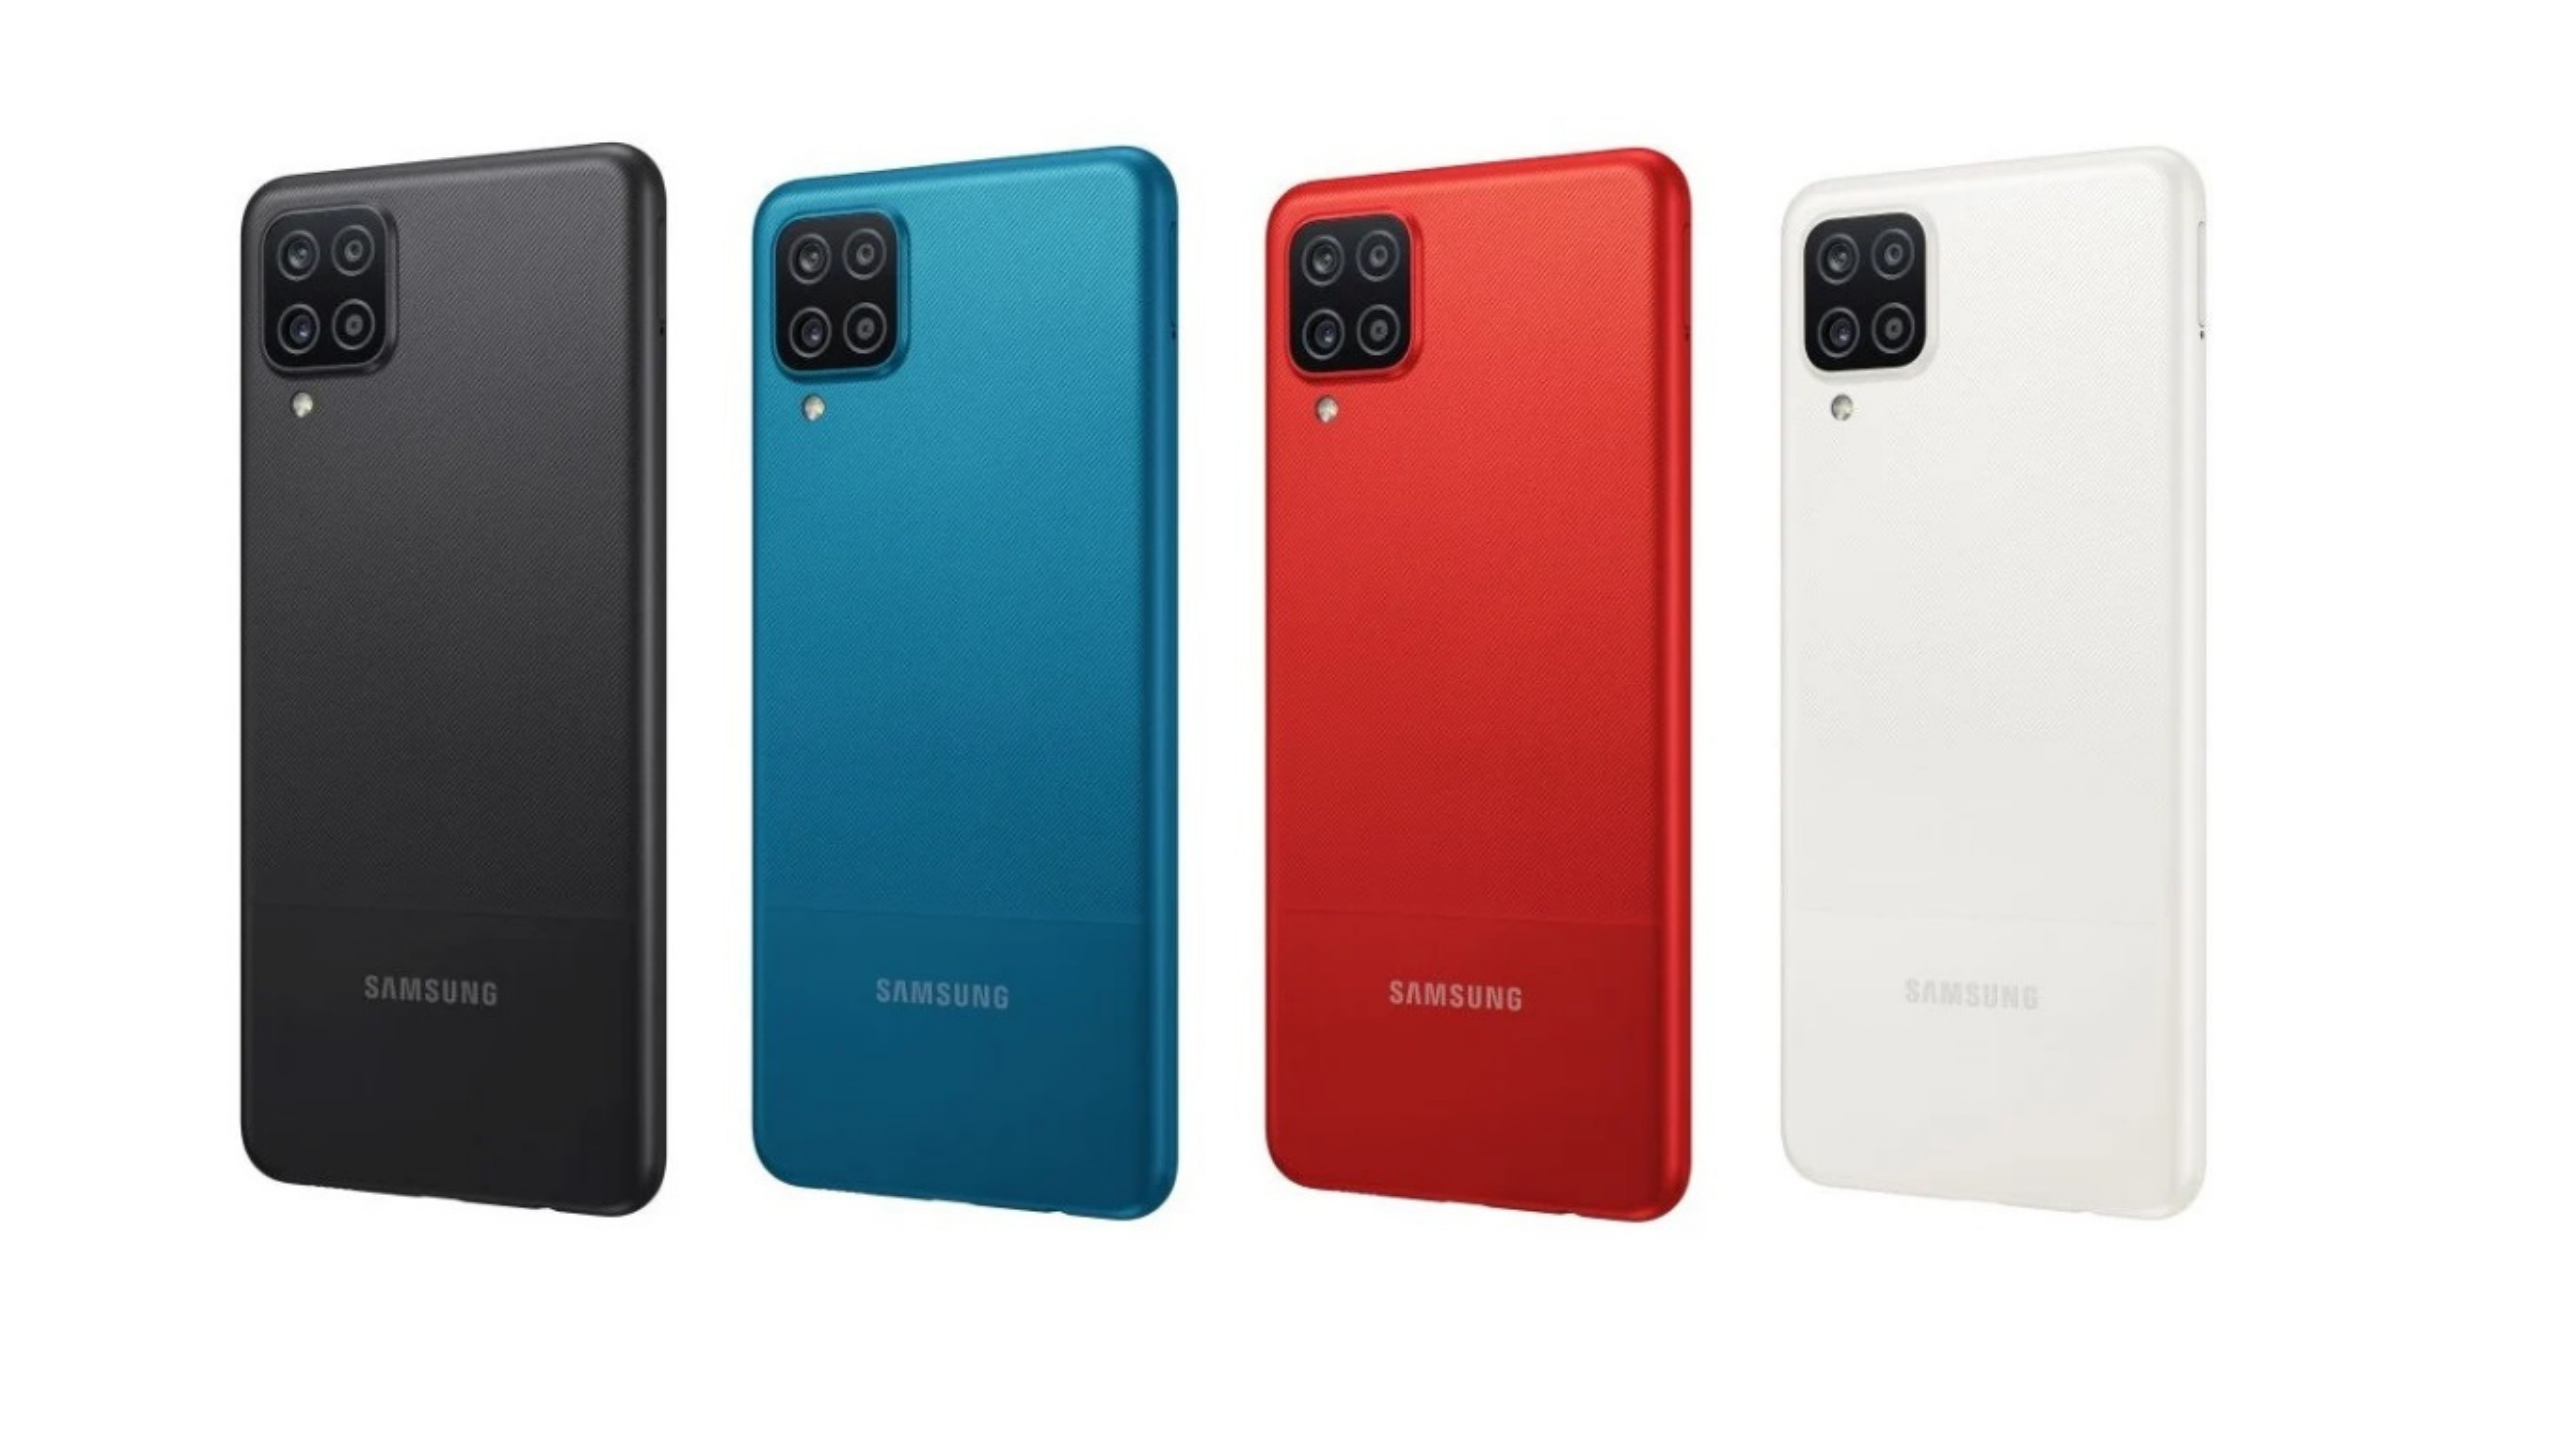 Spesifikasi dan Kelebihan Samsung Galaxy A12 Terbaru, Harga 2 Jutaan